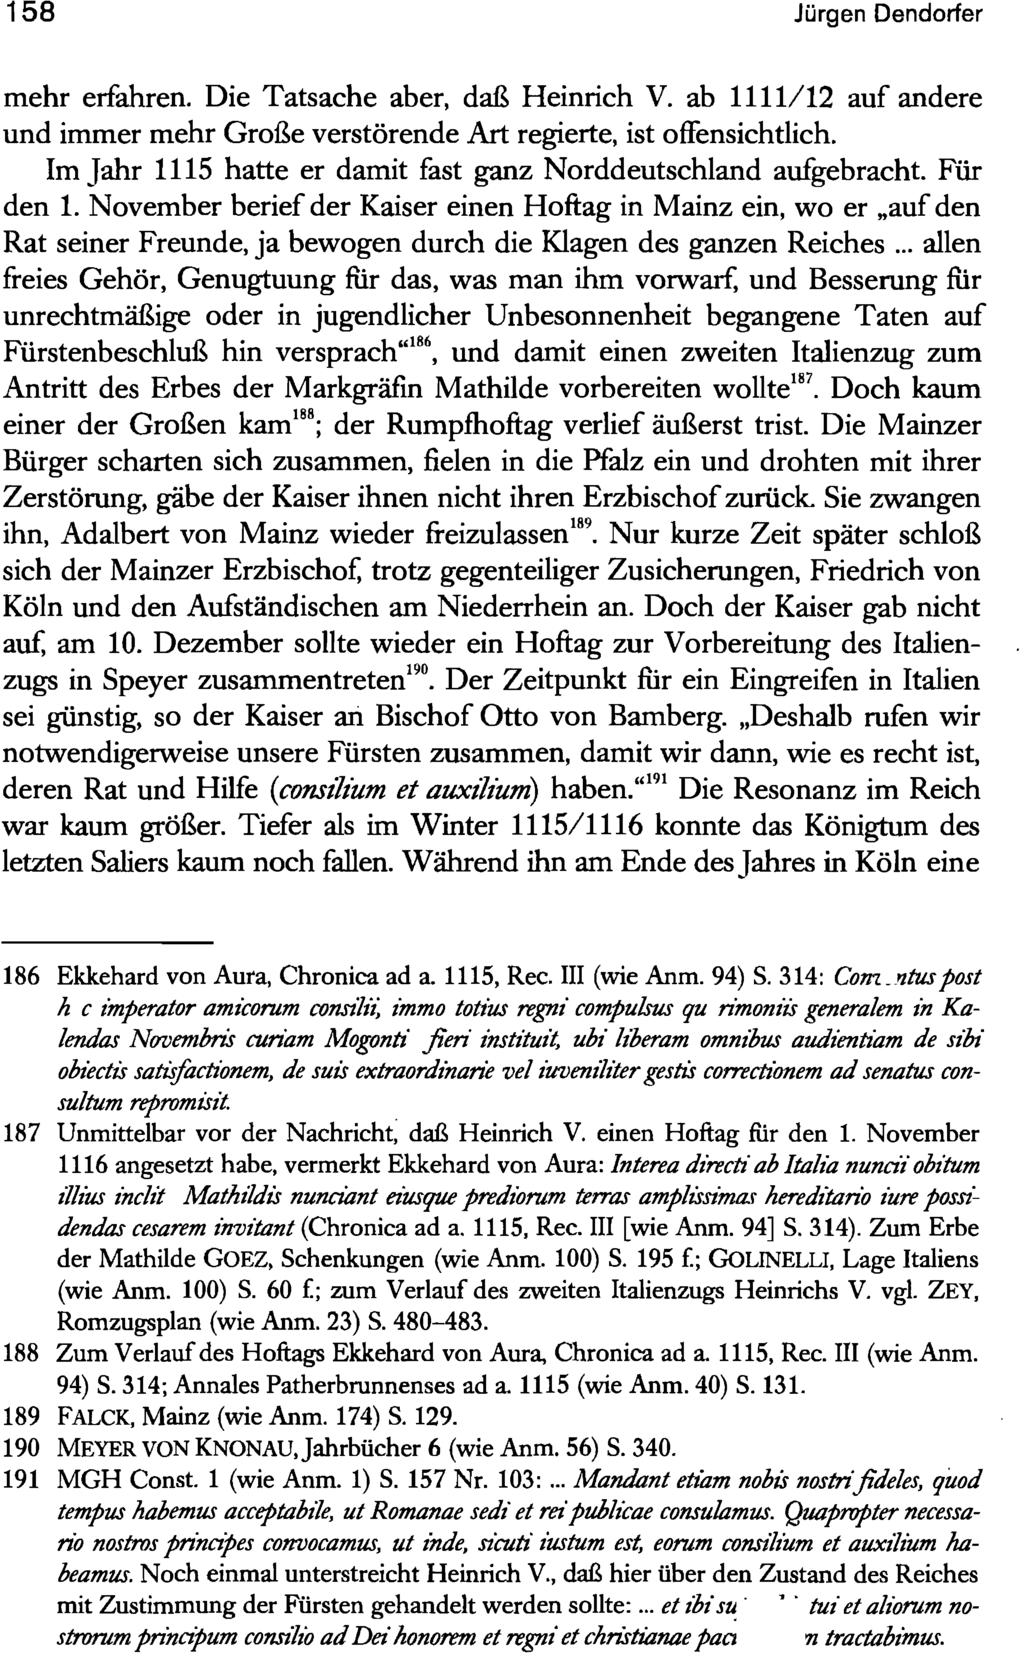 158 Jürgen Dendorfer mehr erfahren. Die Tatsache aber, daß Heinrich V. ab 1111/12 auf andere und immer mehr Große verstörende Art regierte, ist offensichtlich.